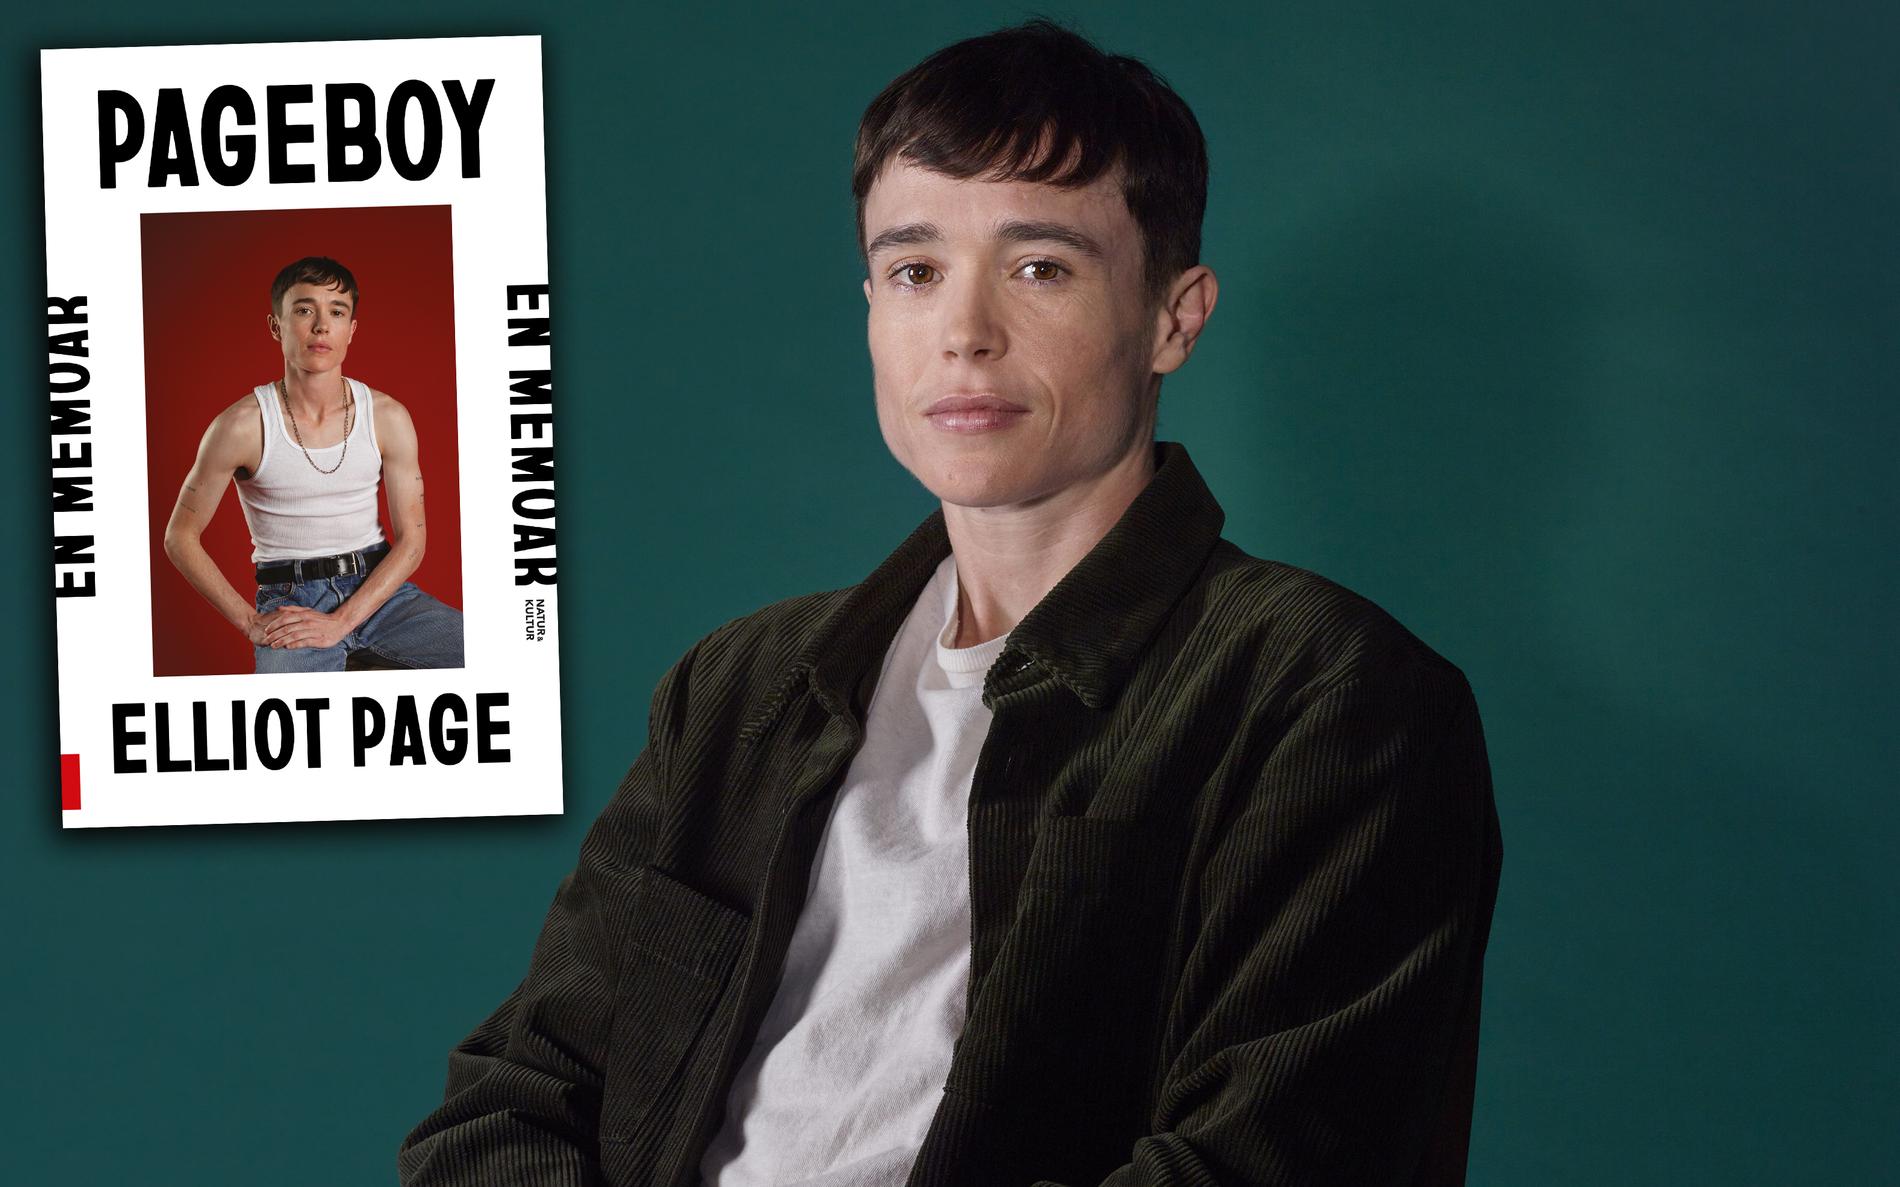 Elliot Page utkommer med memoaren ”Pageboy” – om att komma ut som trans, om Hollywood och om barndomens Halifax. Nino Mick recenserar.